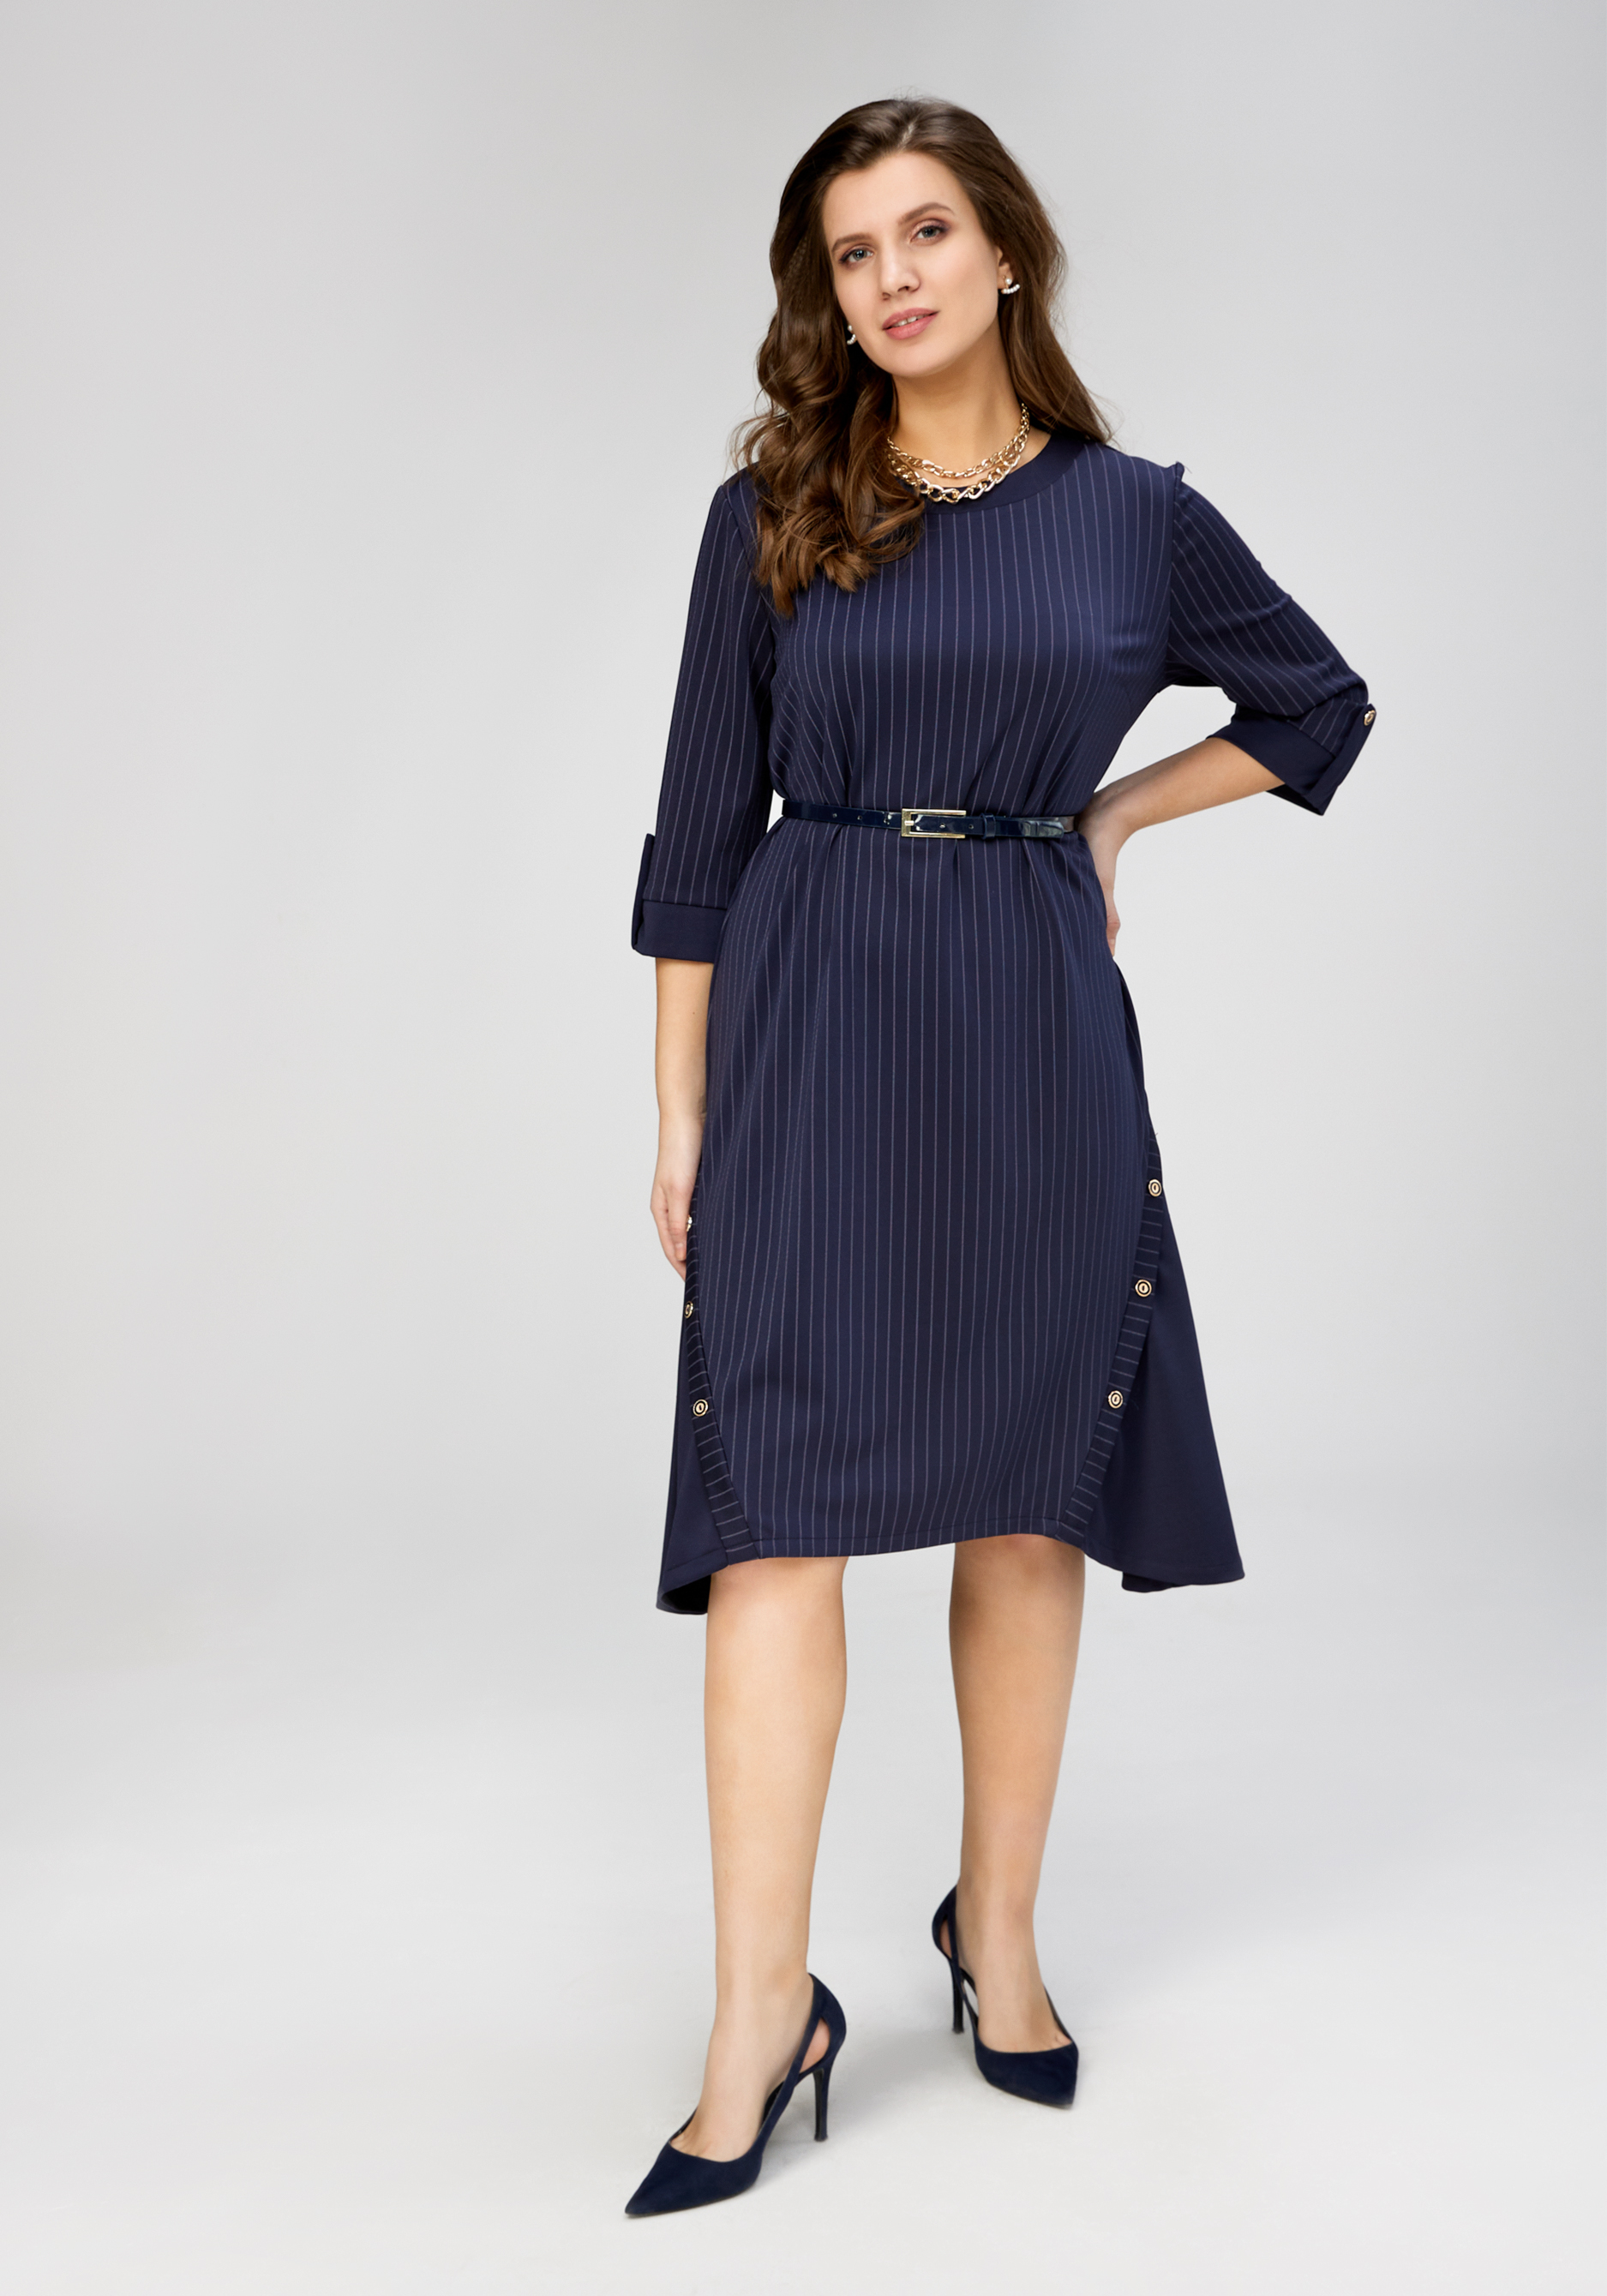 Платье в полоску "Классический стиль", размер 50, цвет синий - фото 6